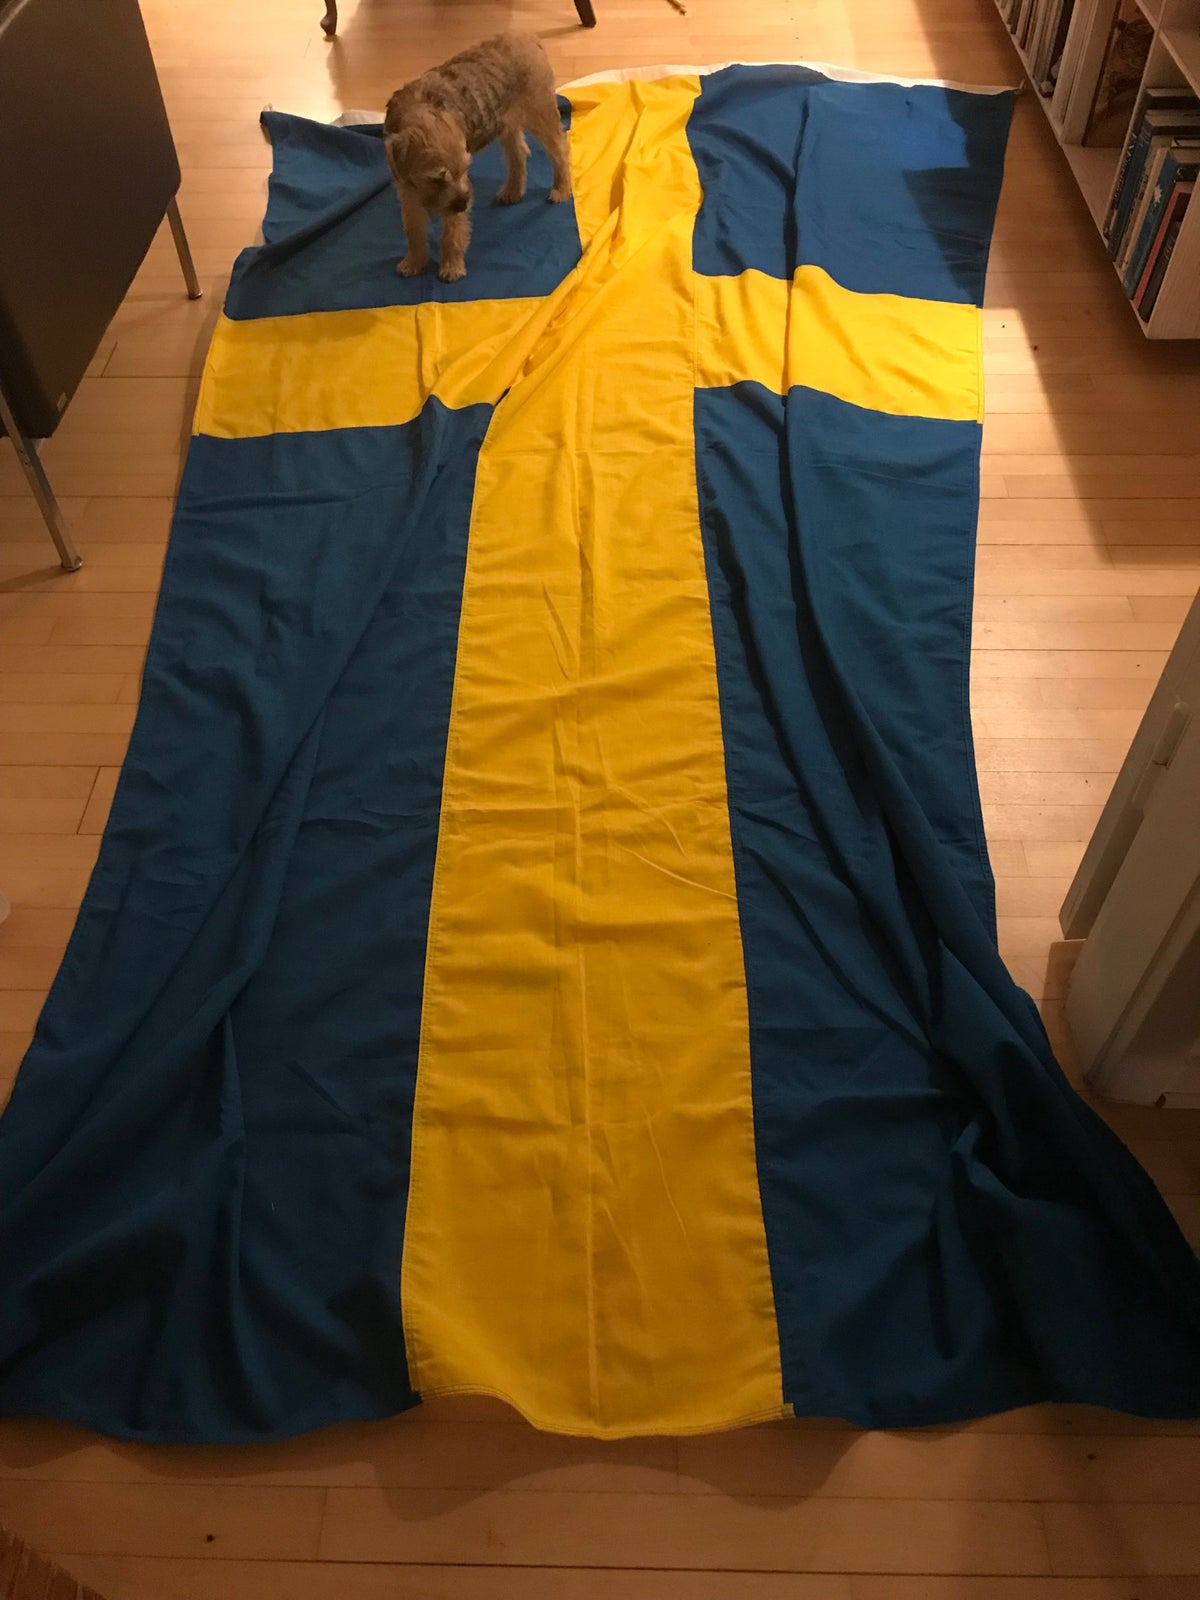 Flag, Det svenske flag